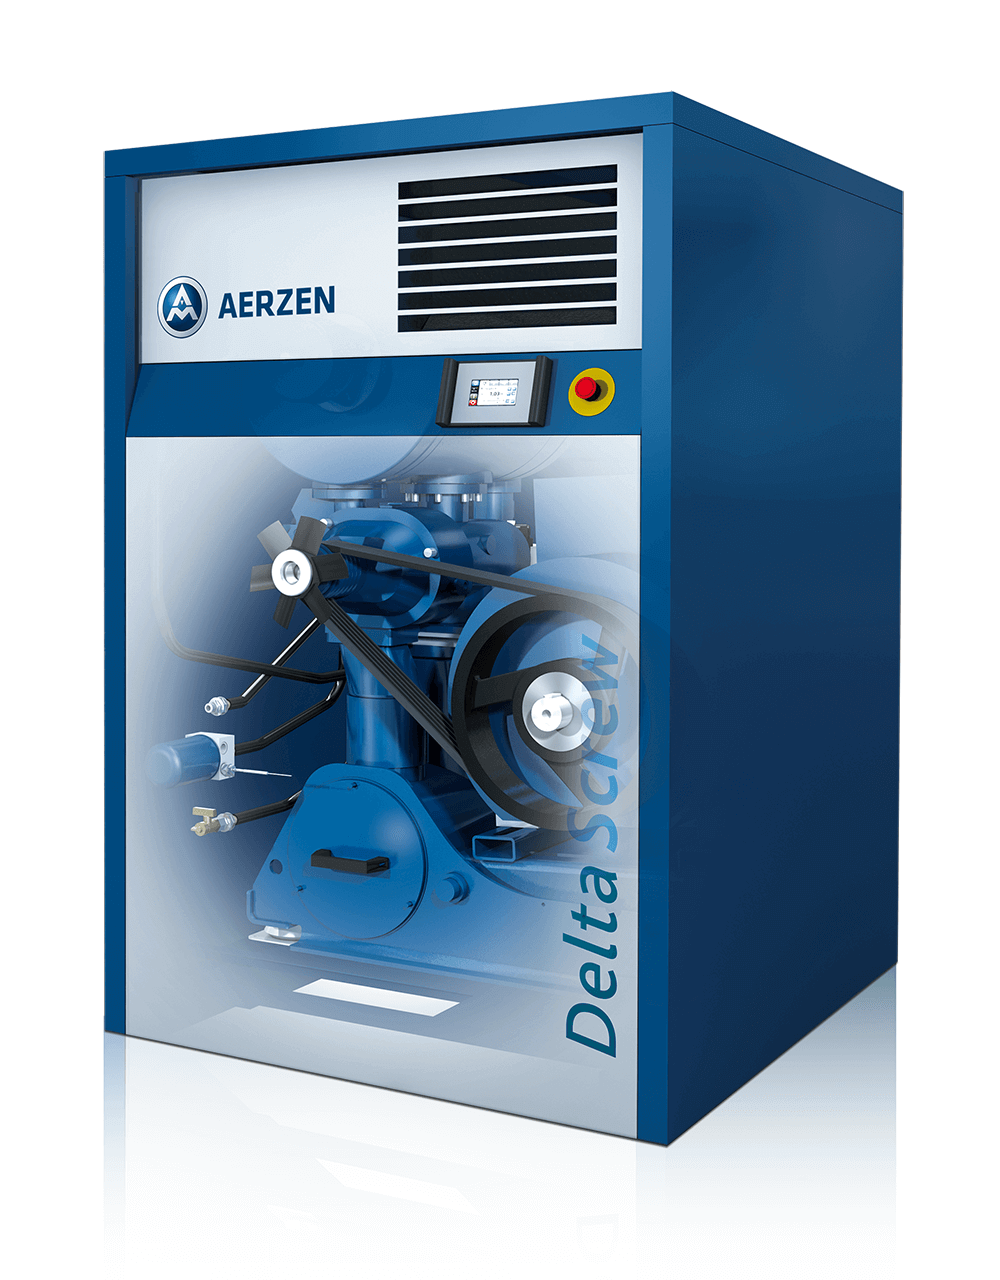 Imagem do novo Delta Screw Geração 5 Plus - uma evolução energeticamente eficiente do compressor de parafuso série Delta Screw Geração 5